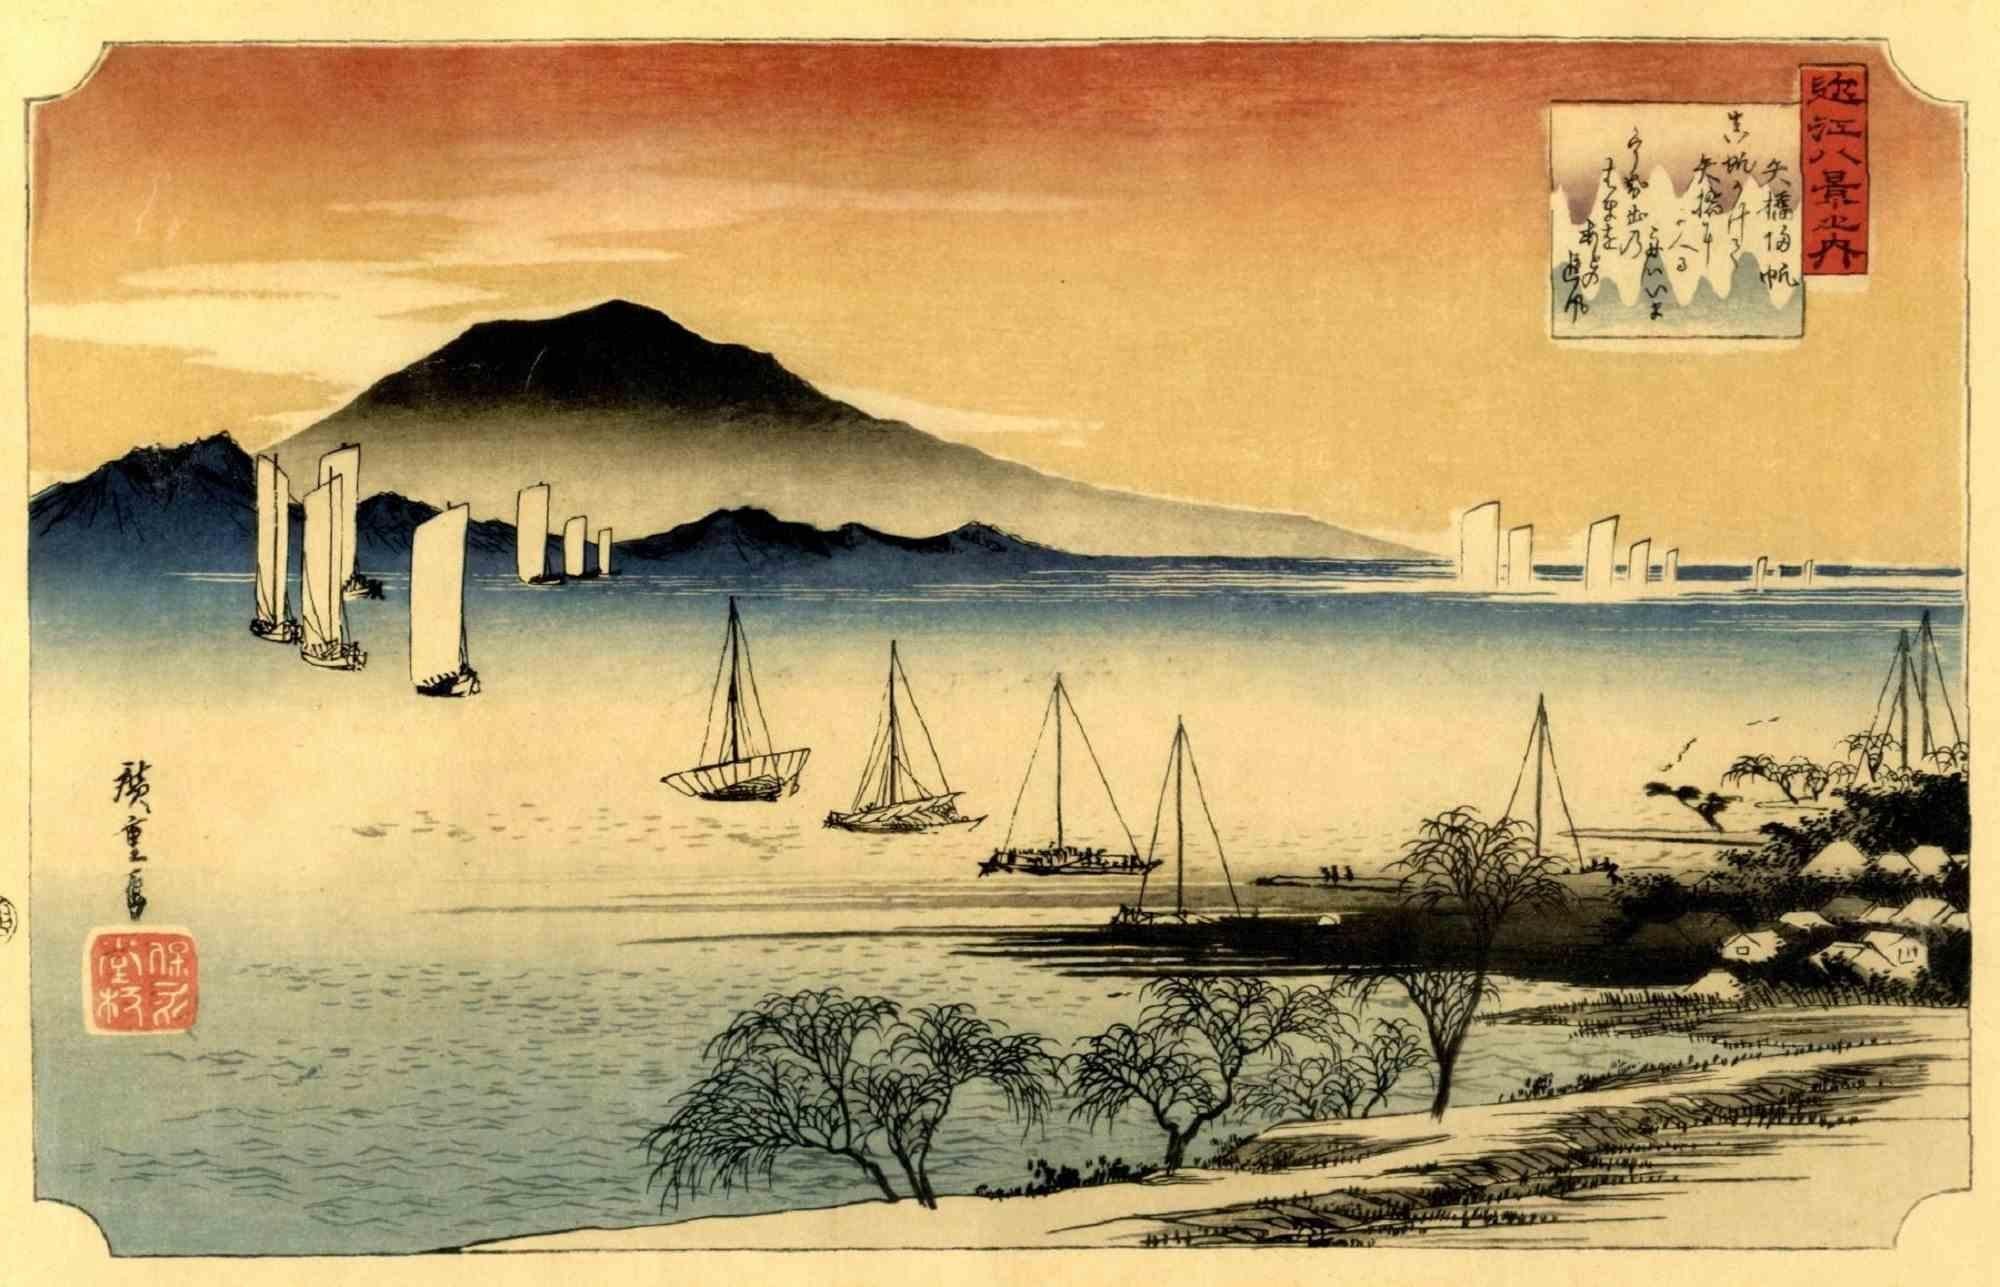 Le lac Biwa, coucher de soleil à Yabase est une œuvre d'art moderne originale réalisée par Utagawa Hiroshige (1797 - 12 octobre 1858) dans les années 1920.

Gravure sur bois Oban Yokoe Format.

Réimpression de la période Taisho au début de la